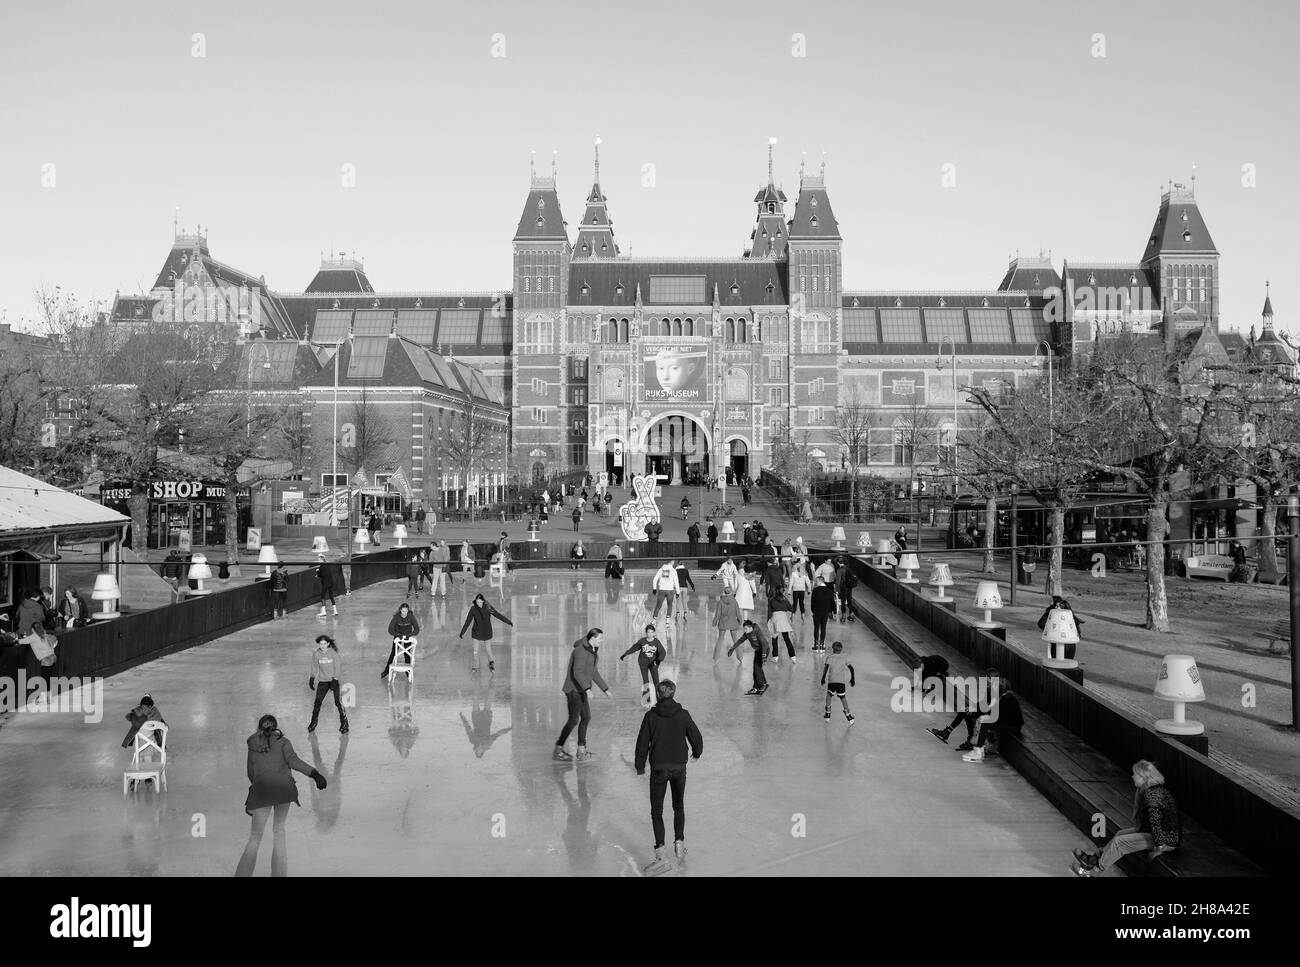 Eislaufen in Amsterdam vor dem Rijksmuseum. Schaatsen op het museumplein voor het rijksmuseum. Stockfoto